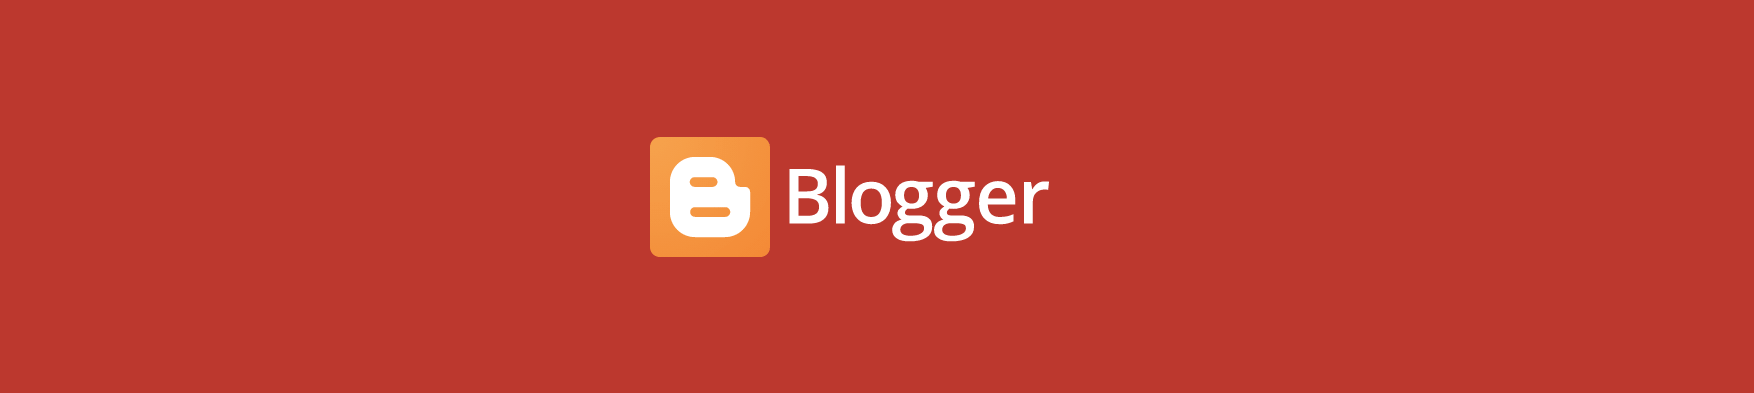 логотип блоггера